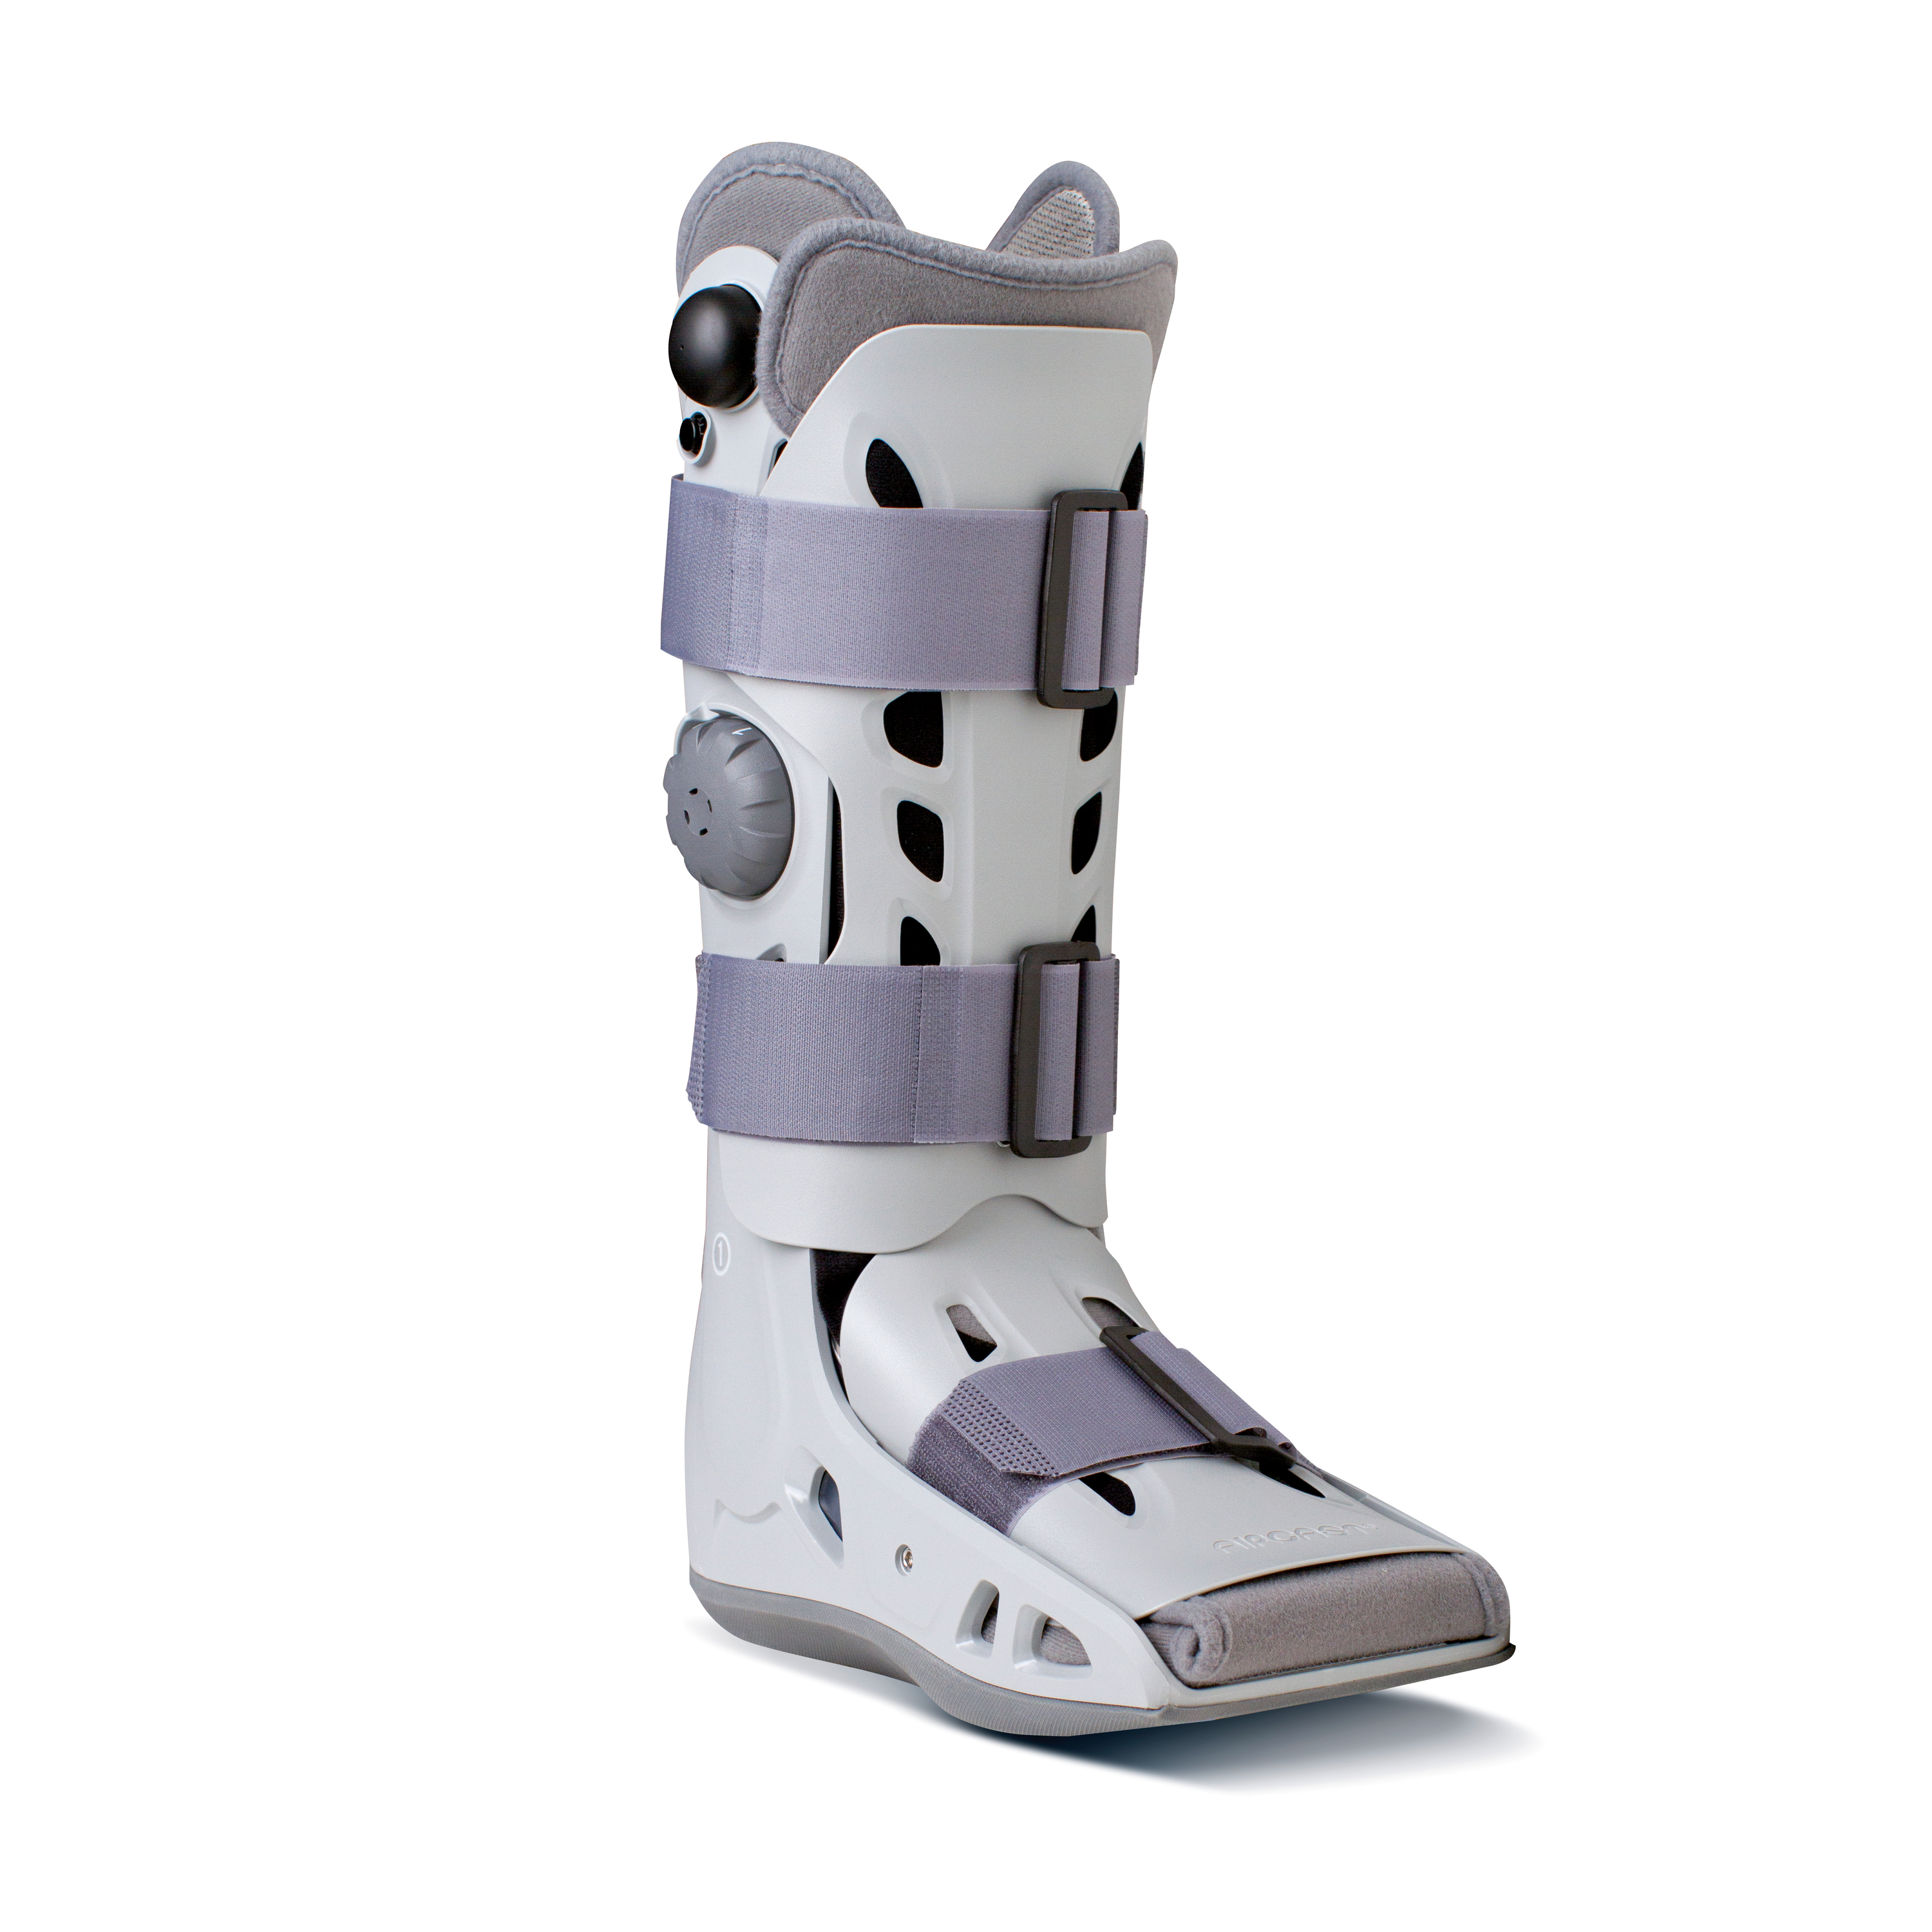 AIRCAST® Airselect™ Elite Walker Produktbild, Unterschenkel-Fuß-Orthese zur Immobilisierung in vorgegebener
Position